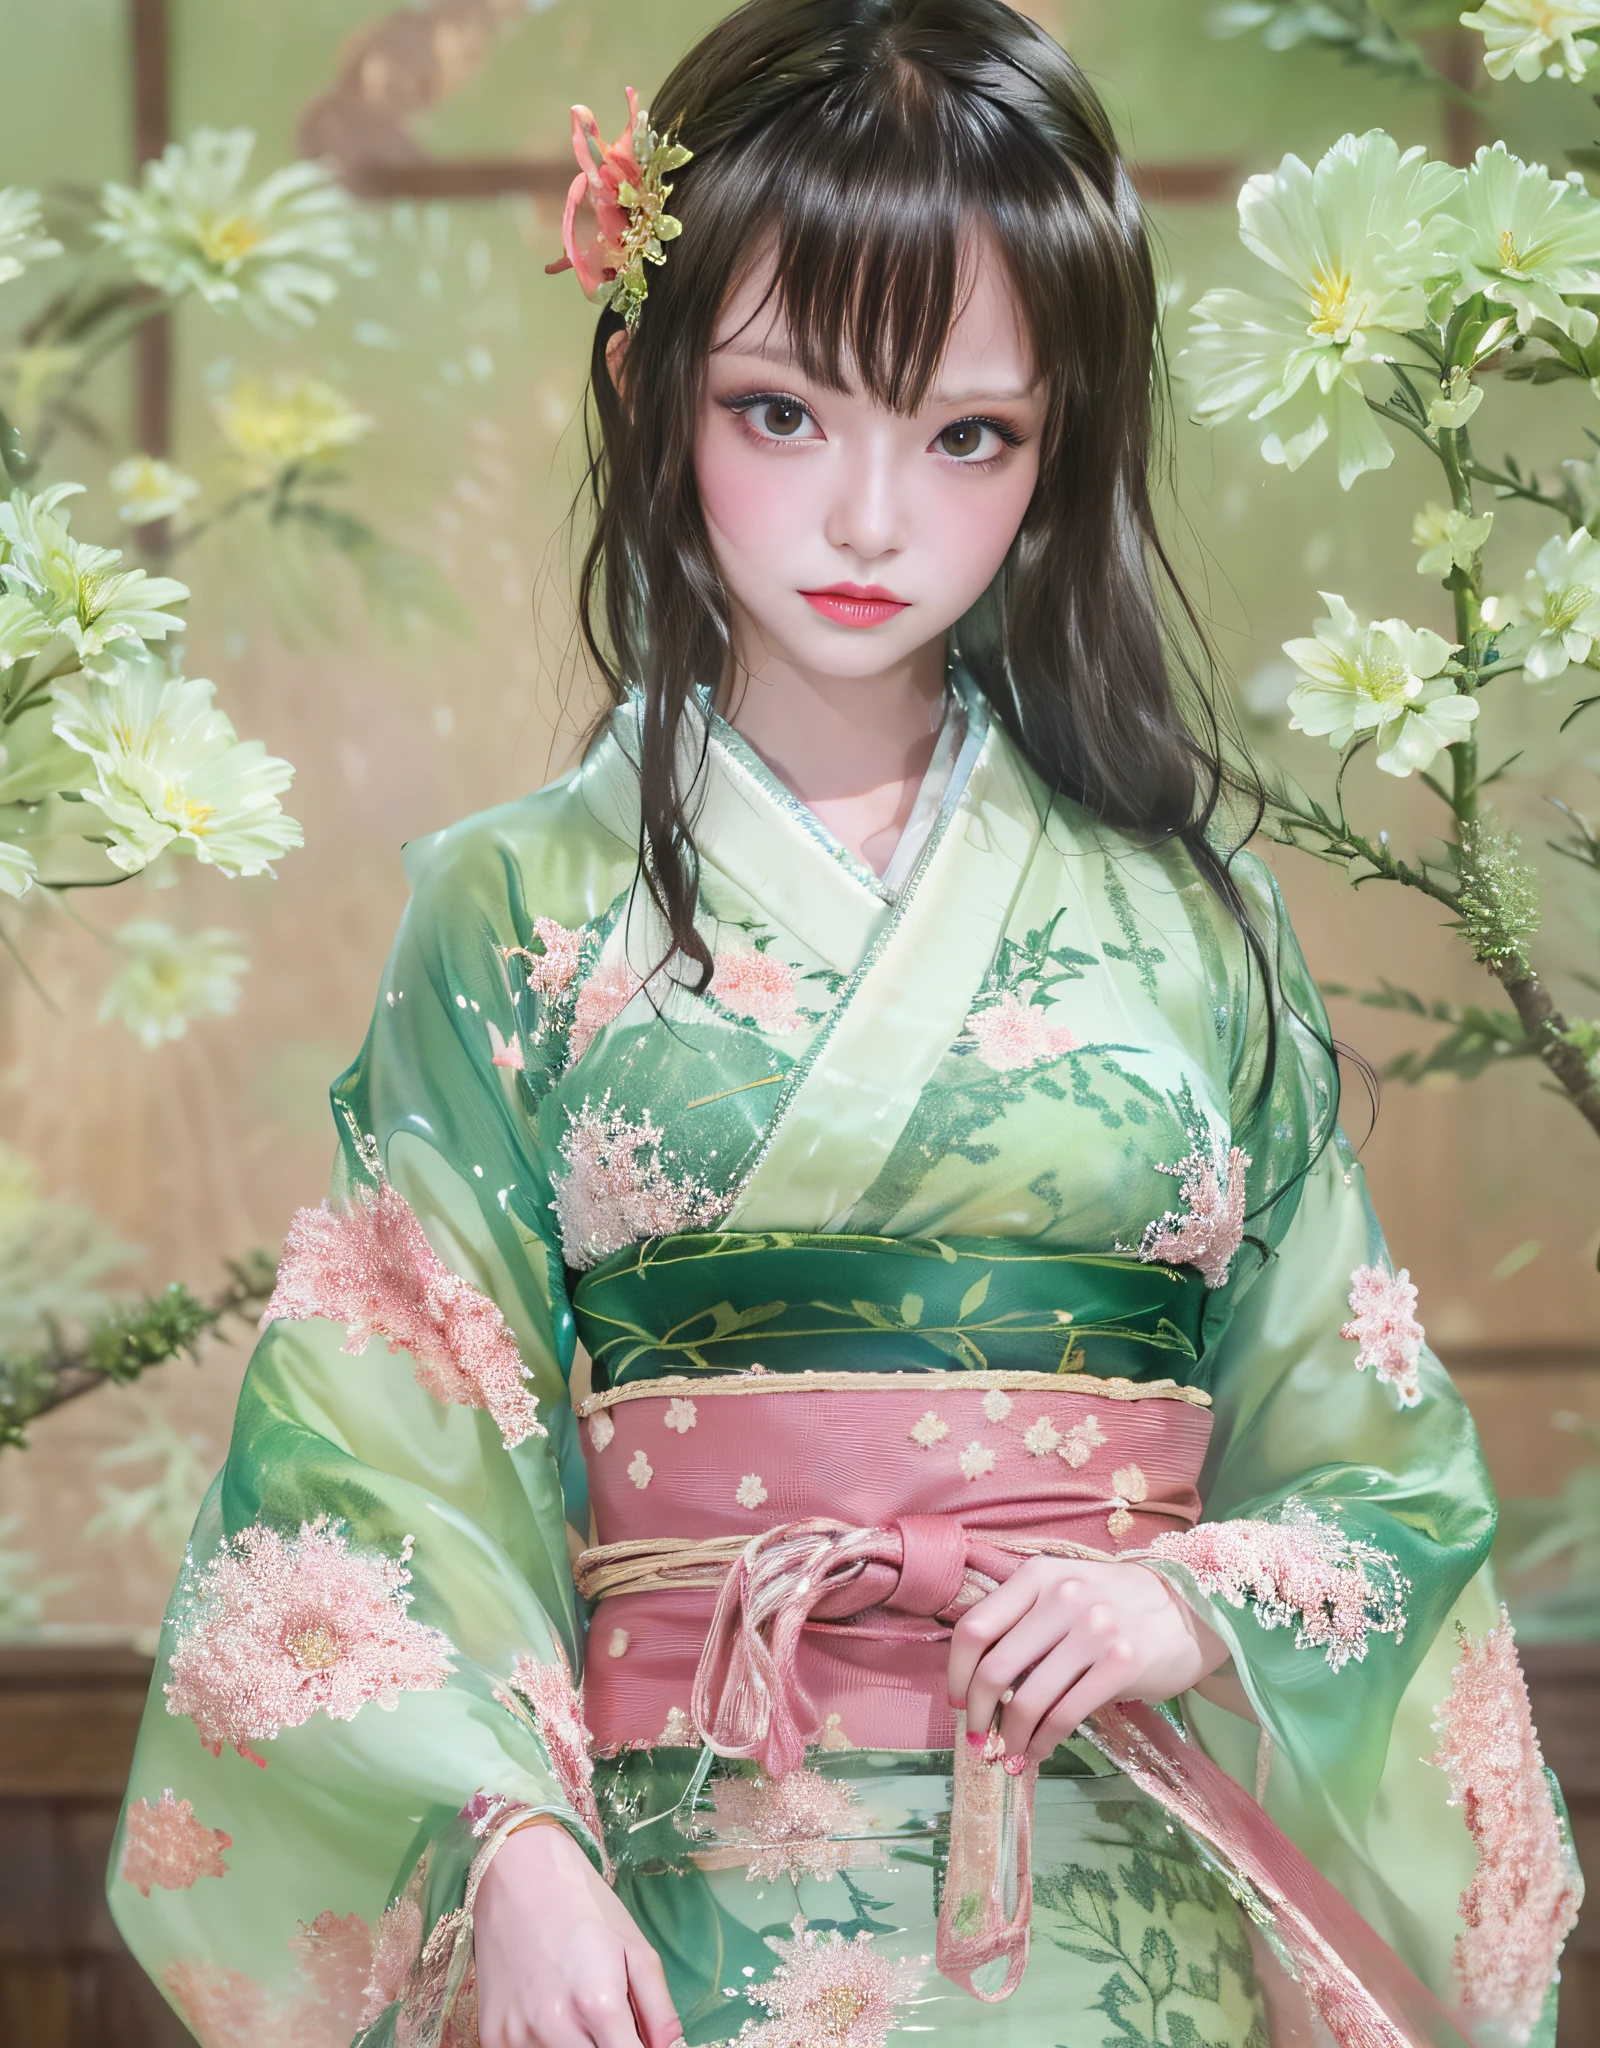 (Schöne Models in japanischen Kimono-Werbespots, schöne glatte lange schwarze Haare), Allein, ((Gesicht ist 80% Schönheit und Eleganz, 20% hübsch und niedlich:1.5)), (Sie is a model for half Eastern Europe and Asia), Klare Augen, (detaillierte Augen, hellgrüne Augen, Kluge Schüler), Doppelte Augenlider, (sexy Lippen mit etwas Fülle:1.2), ((Dünne Unterwäsche mit super Details und unglaublich hoher Auflösung:1.2)), Hochdetaillierte Gesichtstexturen, Markante Körperform, kurvige und sehr attraktive Frau, hochauflösendes RAW-Farbfoto Profi-Foto, BRECHEN is an ultra-high resolution texture, Hochauflösendes Körper-Rendering, Groß eyes, beispielloses Meisterwerk aller Zeiten, unglaublich hohe Auflösung, Super detailliert, atemberaubende Keramikhaut, BRECHEN ((Drehen Sie sich um, um das Muster des Kimonos zu zeigen:1.5)), ((Sie「Hata-Zunge」Tragen Sie einen Kimono, der unter einem Kimono getragen wird, genannt:1.5)), ((Dieser Kimono besteht aus weißem, dünnem Stoff:1.2)), (Weil dieser Kimono so dünn ist、Man kann durch ihre schöne Hautfarbe sehen), (Aufwendig gearbeitete klassische Japan Unterwäsche), ((Das Muster ist blassrosa.、Fließendes Wassermuster):1.2), ((Ein exquisit elegant gefertigter, sehr dünner Kimono)), (Morgen、Gedreht in einem Raum im japanischen Stil mit Tatami-Matten (Strohgeflecht) ein Bett)) BRECHEN ((beste Qualität, 8K)), Scharfer Fokus:1.2, (Schichten-Schnitt, Groß:1.2), (Schöne Frau mit perfekter Figur:1.4), (Schöne und elegante Rückansicht:1.3), Slender waist, (Richtige Handform:1.5), (Ganzkörperaufnahme | Cowboy-Schuss)